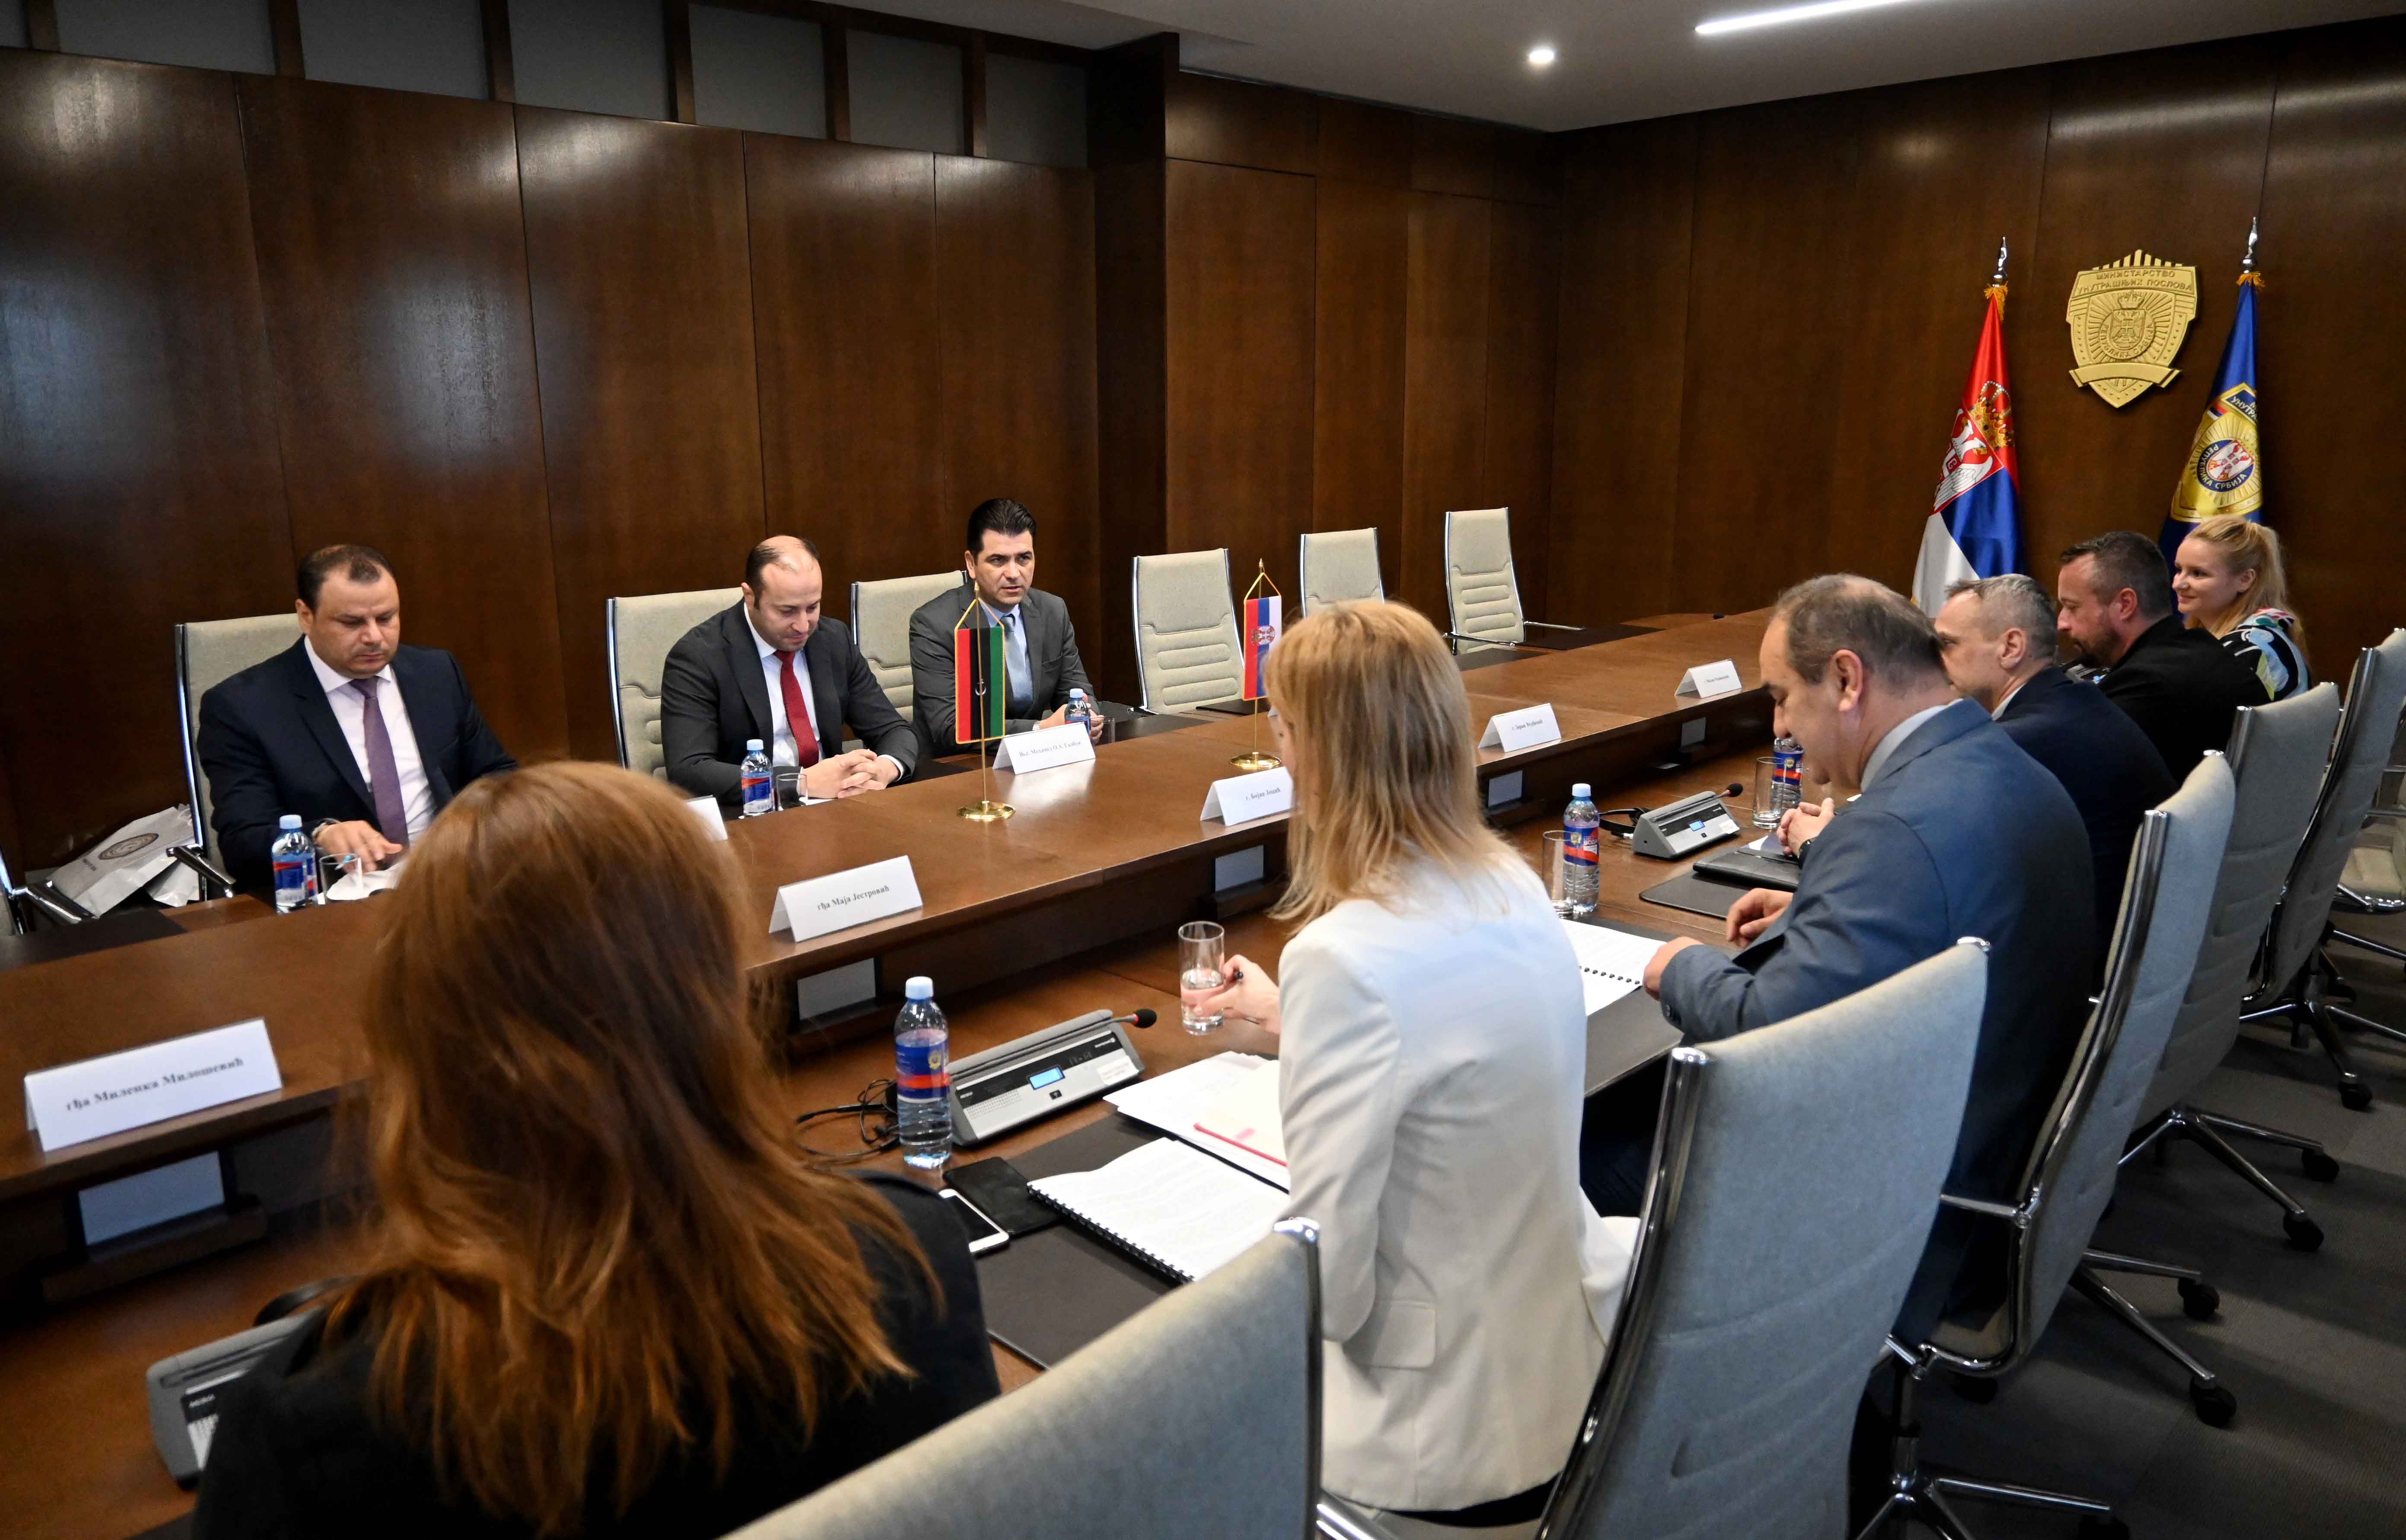 Државни секретар Јоцић и амбасадор Галбун разговарали о успостављању сарадње у области образовања